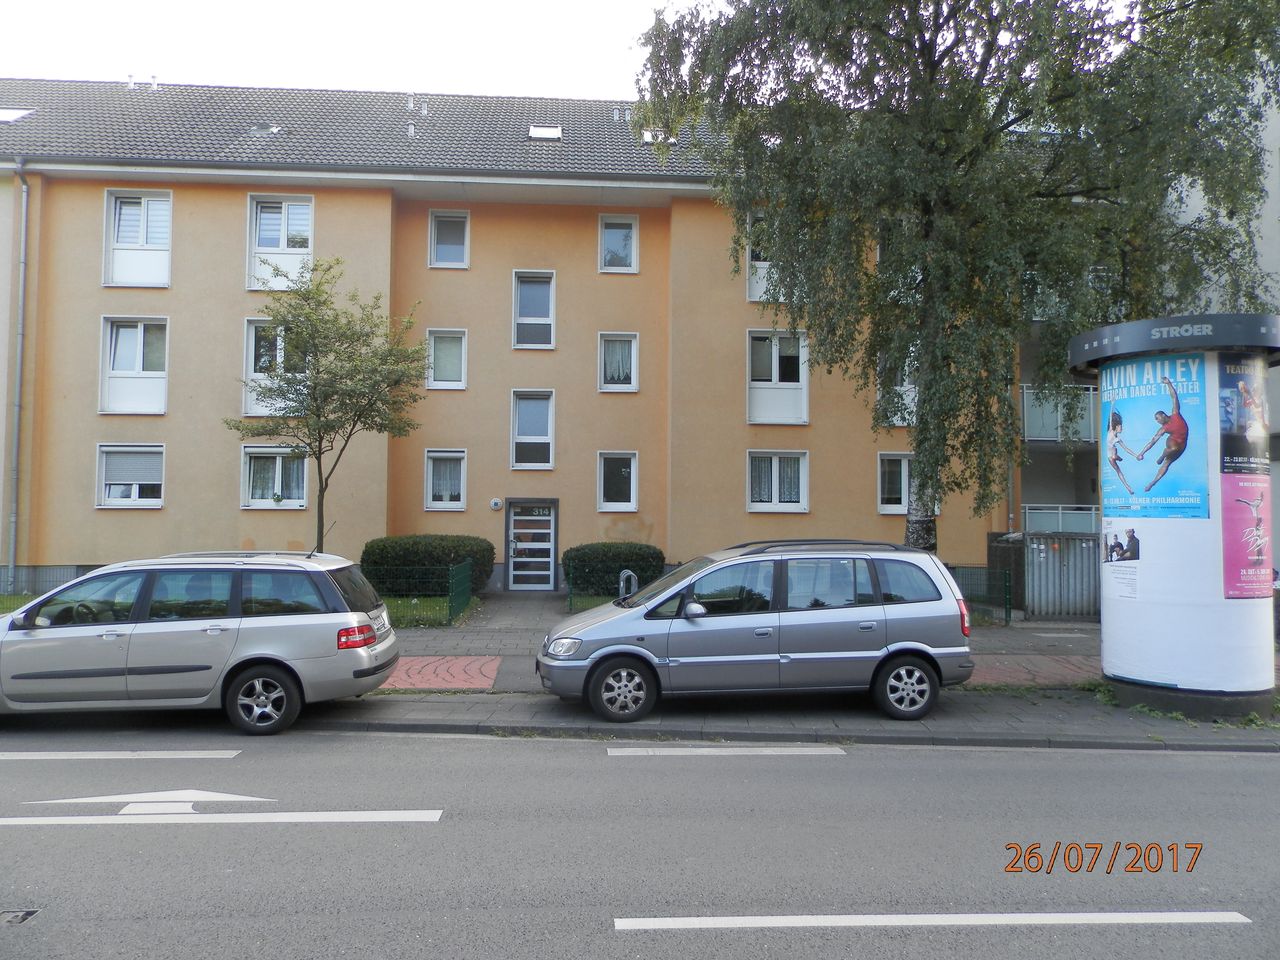 Great flat in Köln - near